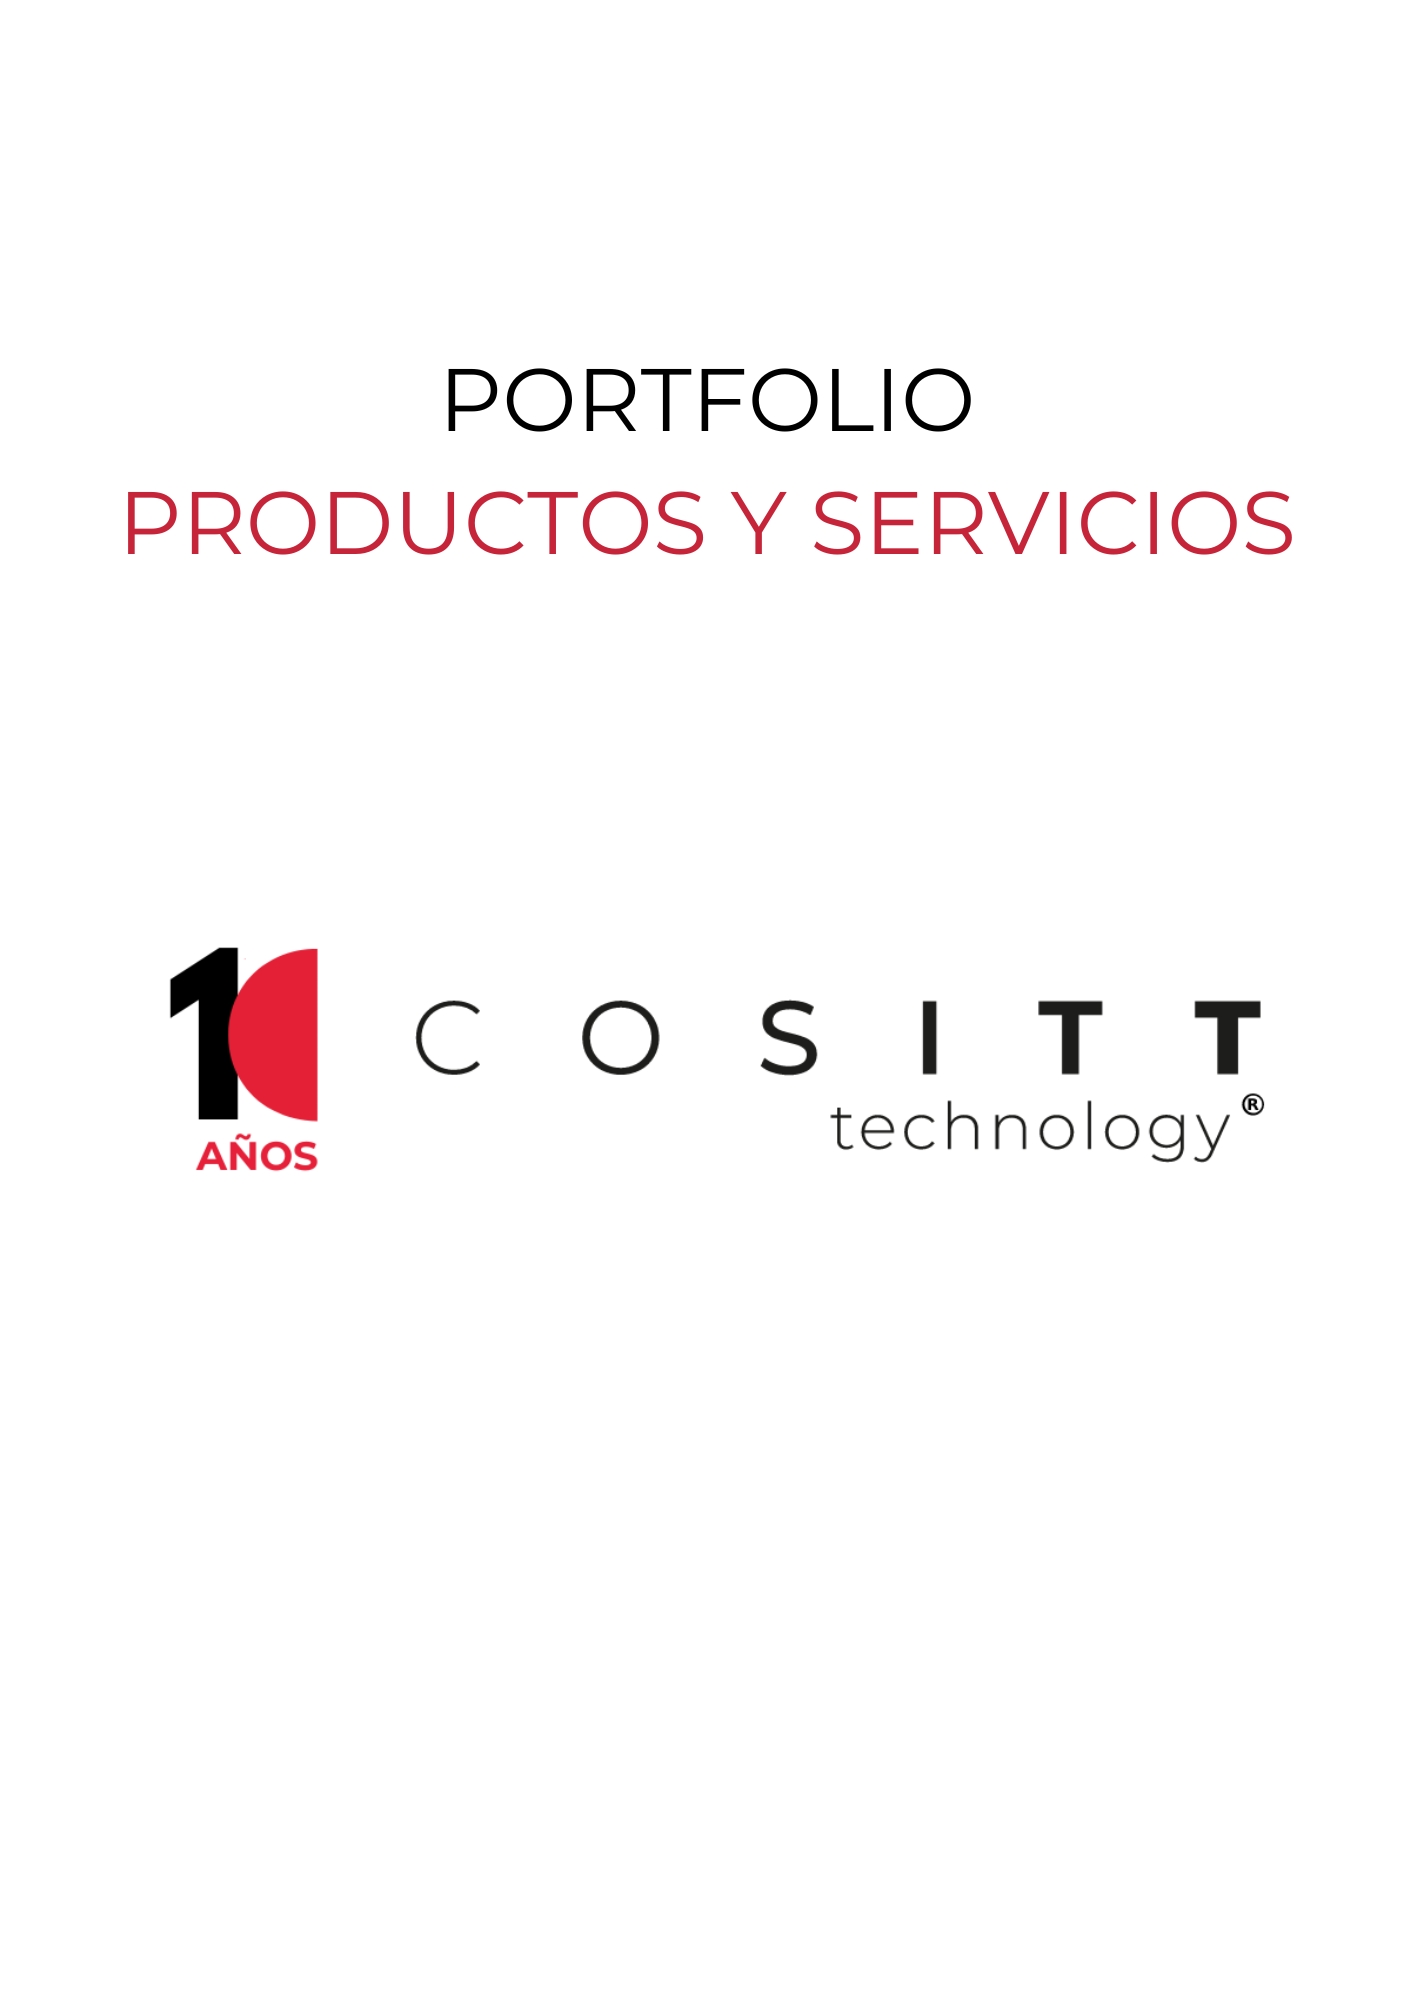 Portfolio Productos y Servicios Cositt Technology